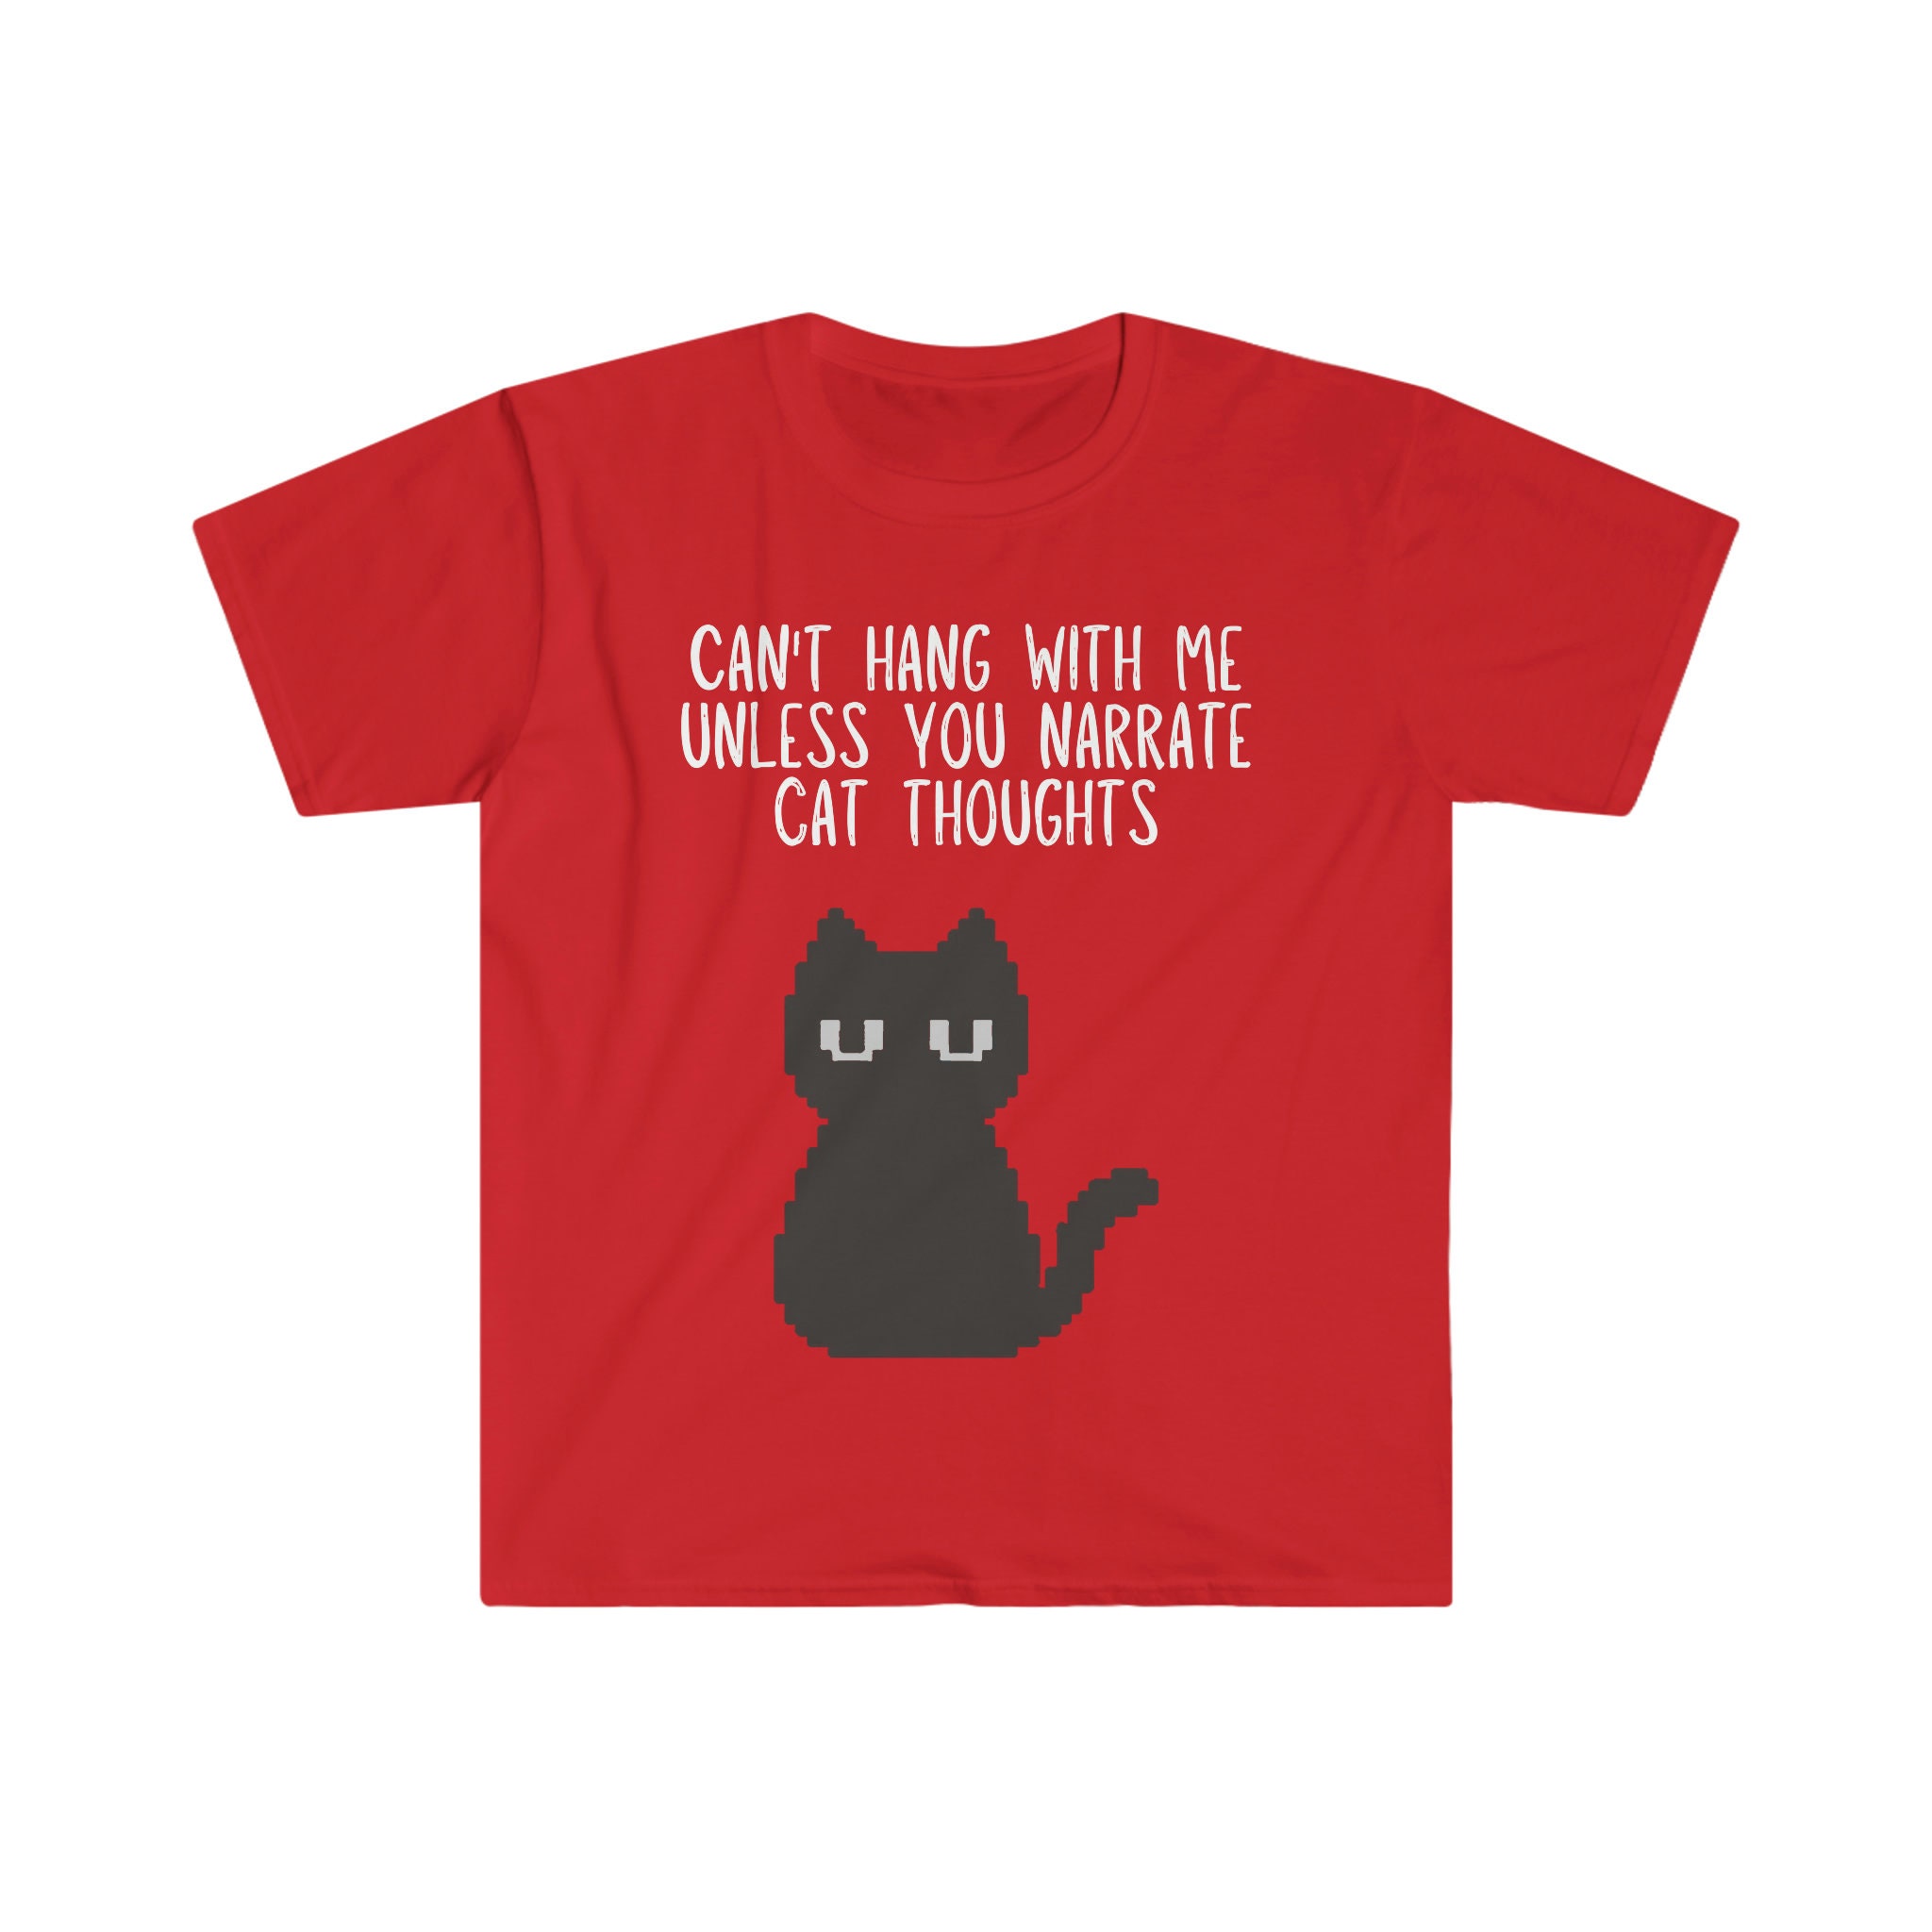 Cat T-shirt Designs - 140+ Cat T-shirt Ideas in 2023